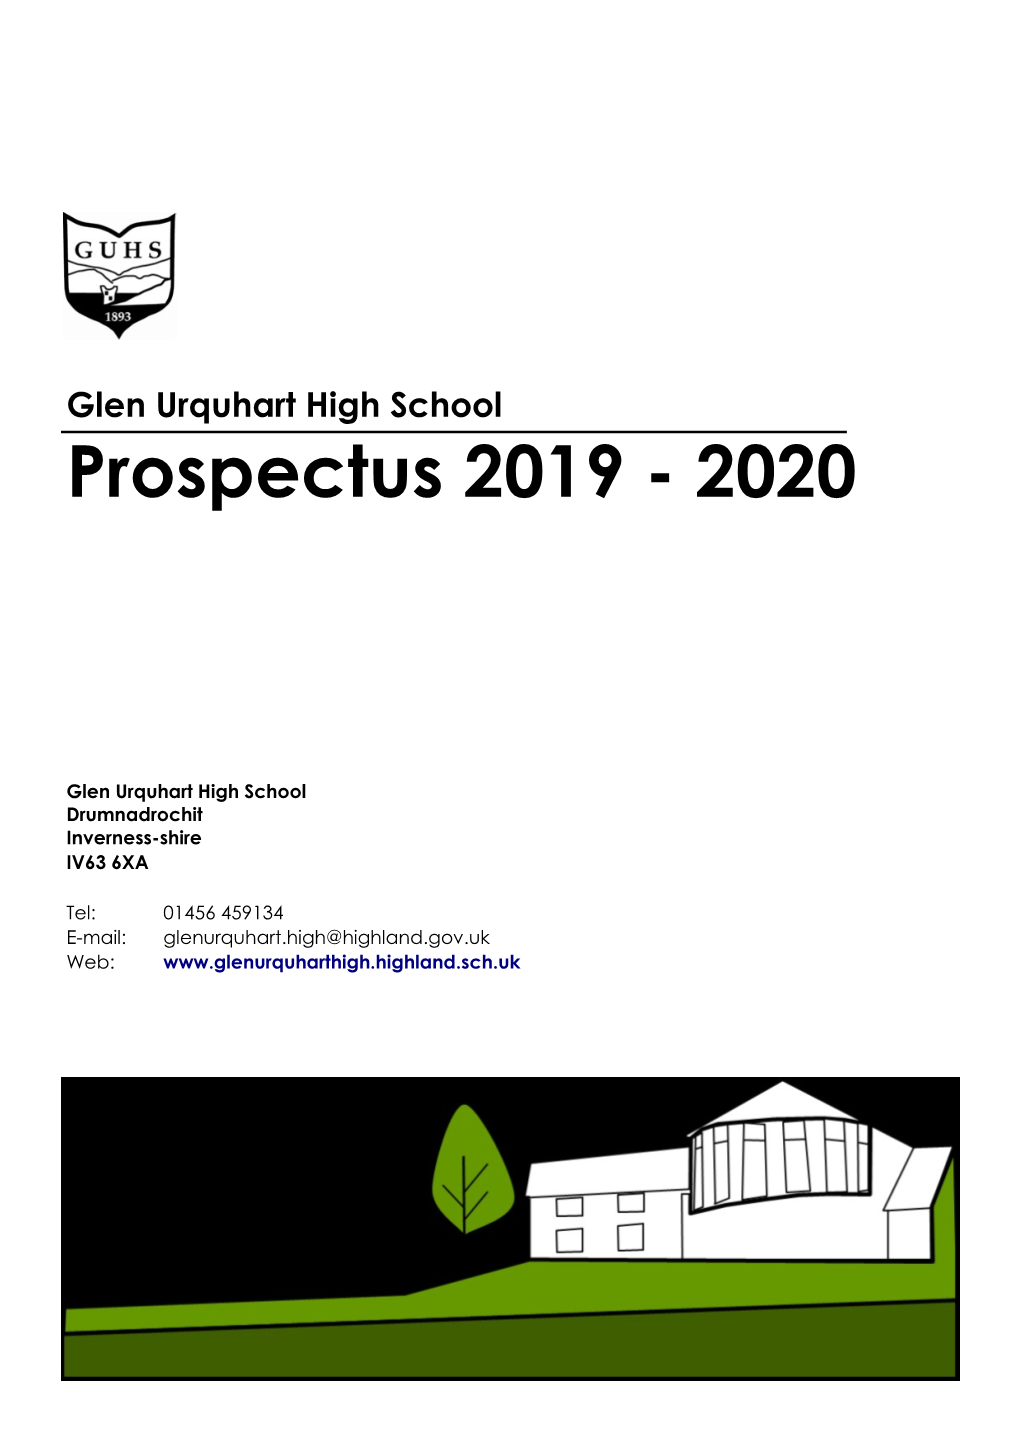 Glen Urquhart High School Prospectus 2019 - 2020